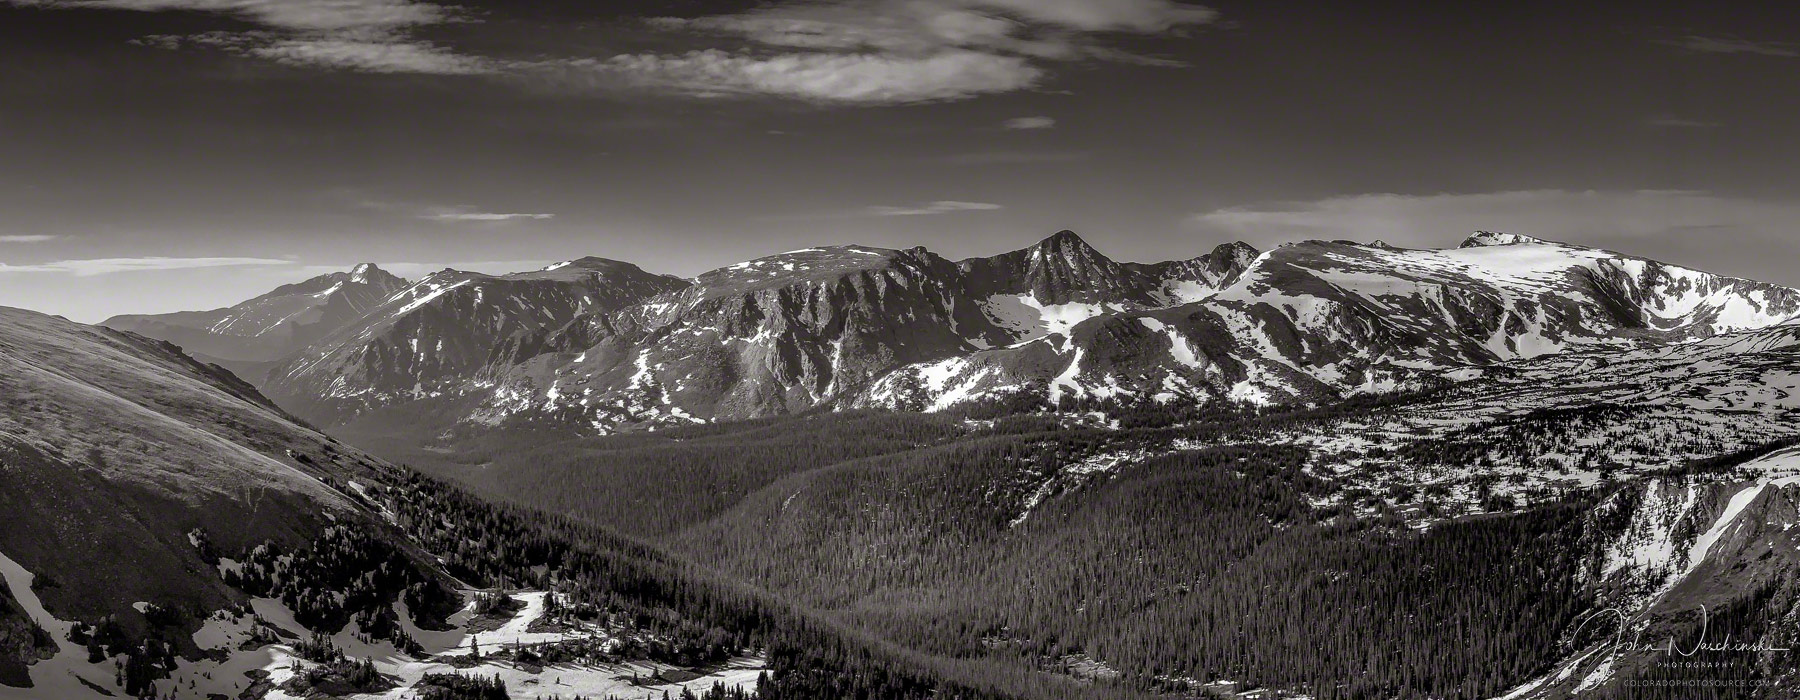 B&W Photos of Colorado Front Range RMNP Gore Range Overlook